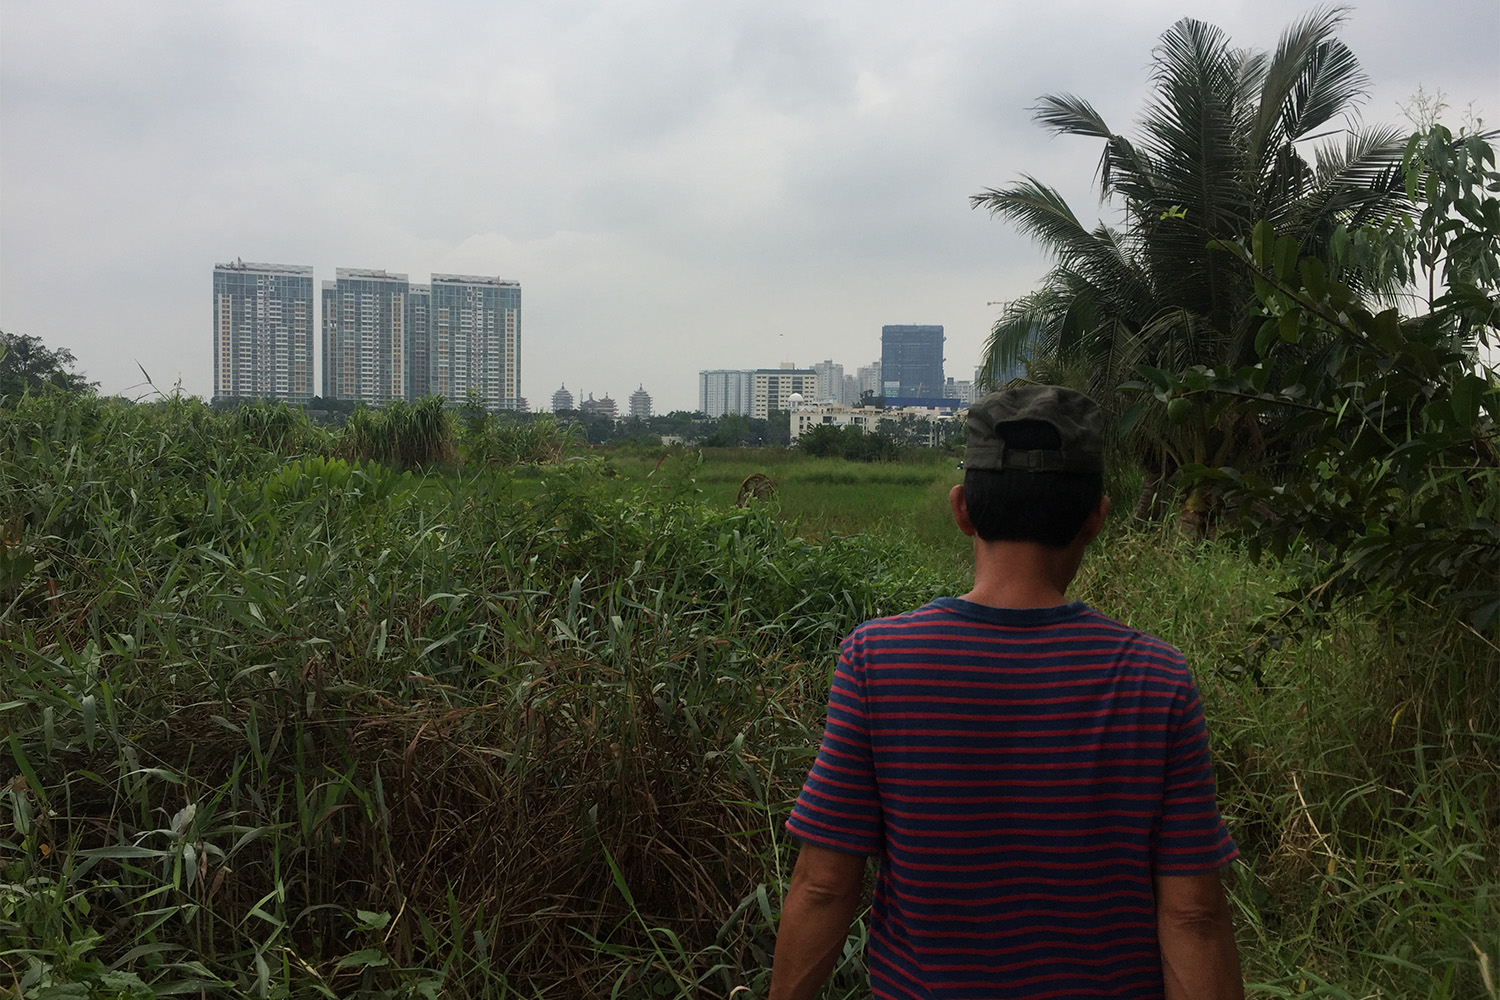 Derrière les rizières, les buildings en construction. Un projet immobilier est prévu ici depuis longtemps, mais rien n’avance.